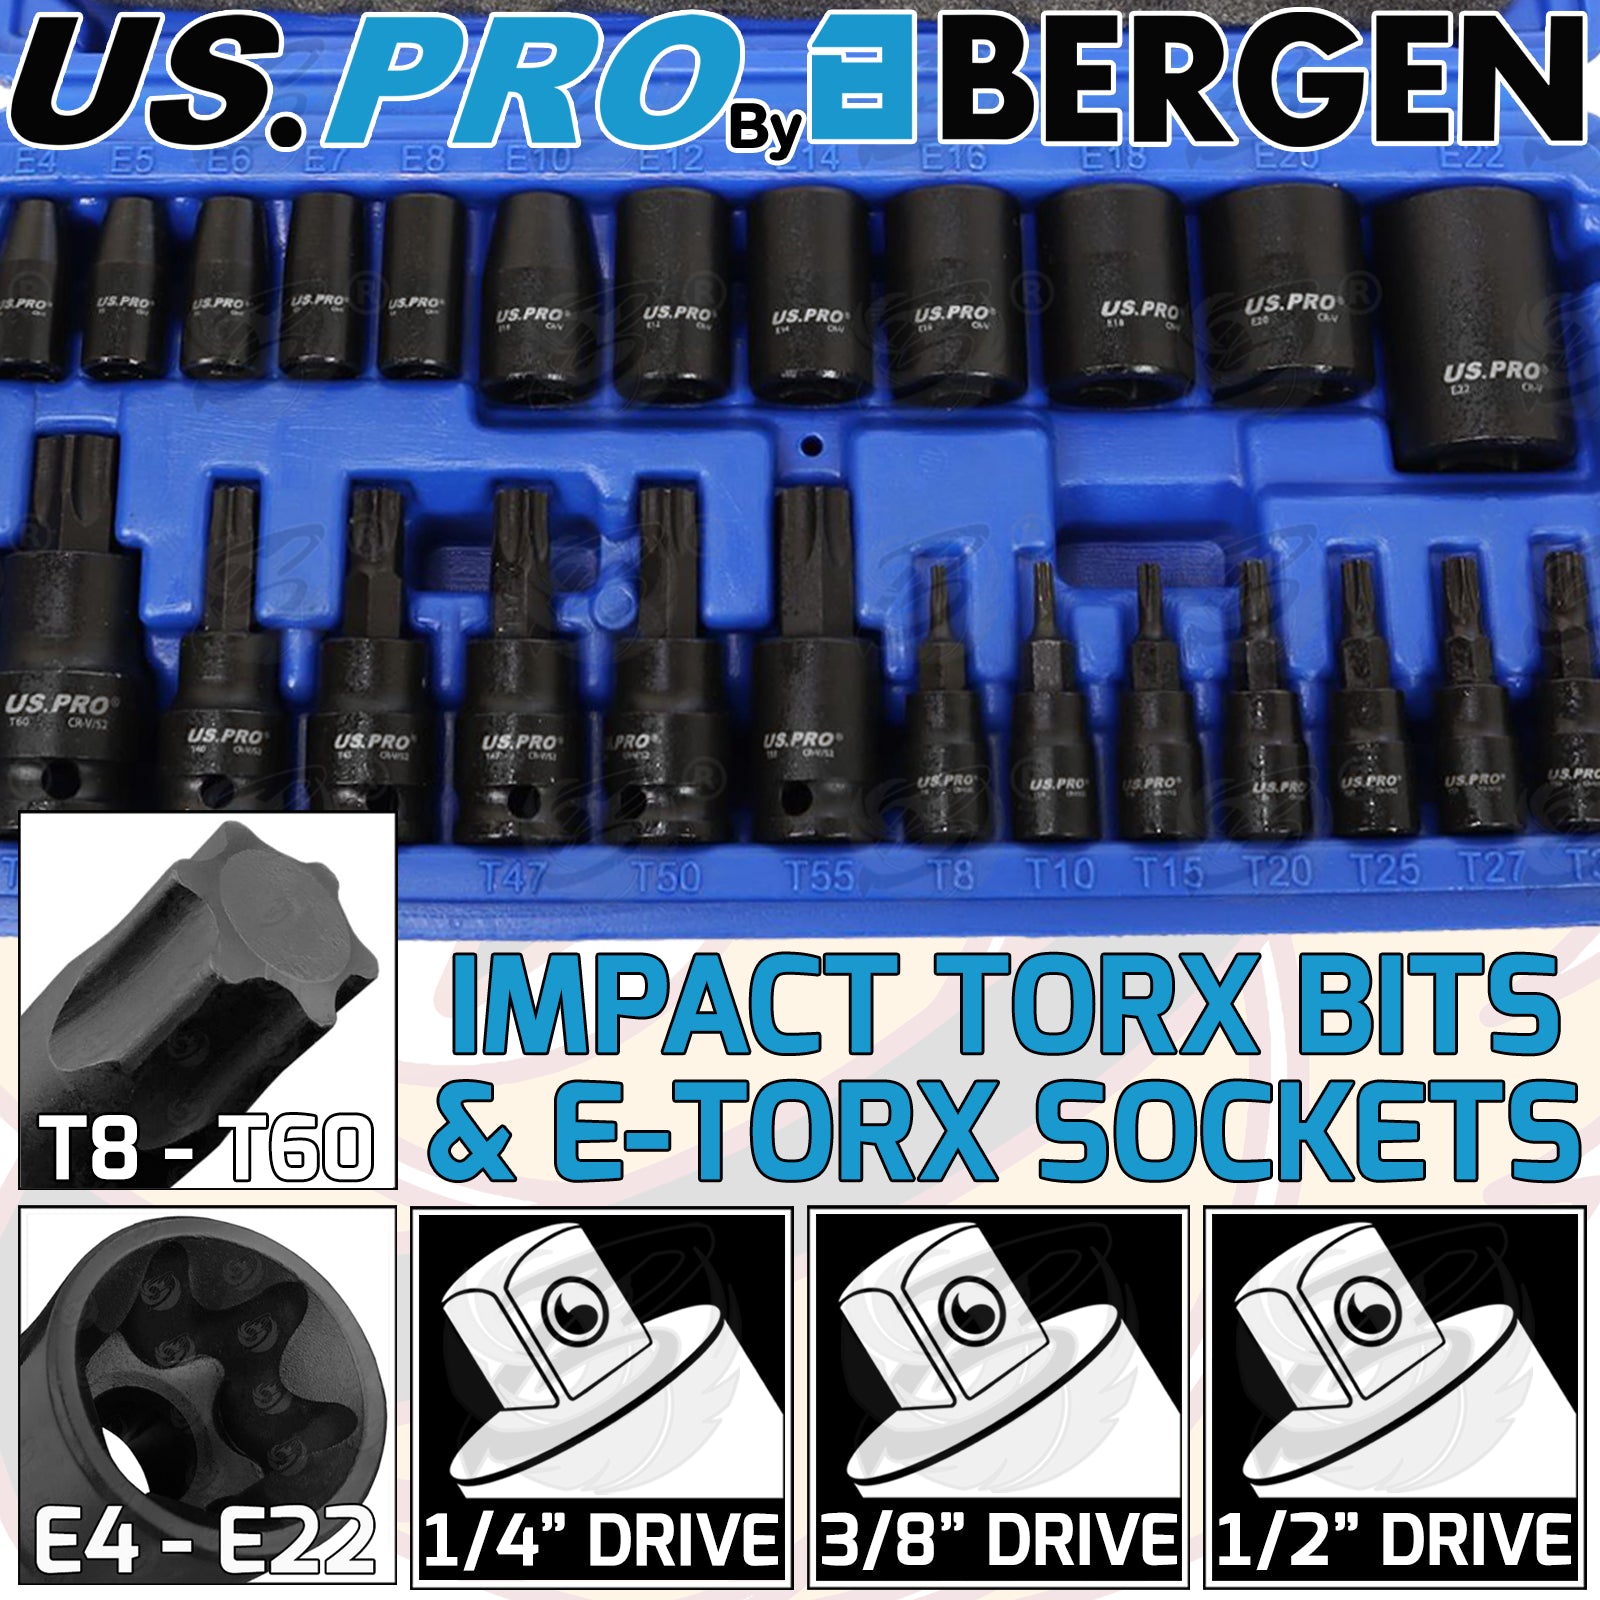 US PRO 25PCS 1/4" & 3/8" & 1/2" DRIVE IMPACT TORX & E - TORX SOCKETS ( E4 - E22 ) ( T8 - T60 )